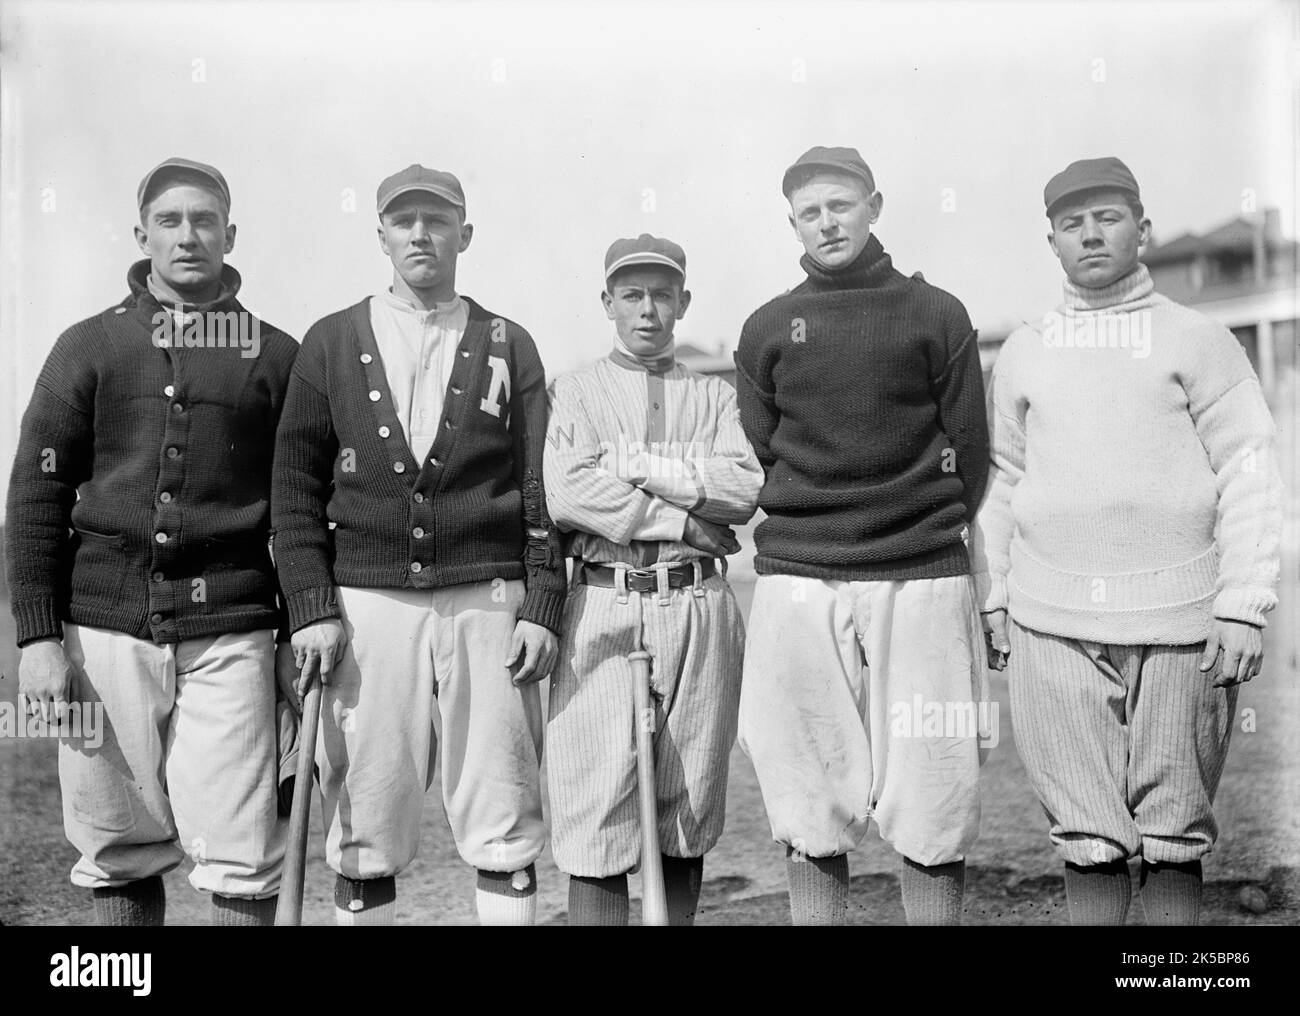 Bob Austin (probablement Robert V.), Vic Bickers (peut-être), Merito Acosta, Joe Gedeon et Al Scheer, Washington American League (Baseball), env. 1913. Banque D'Images